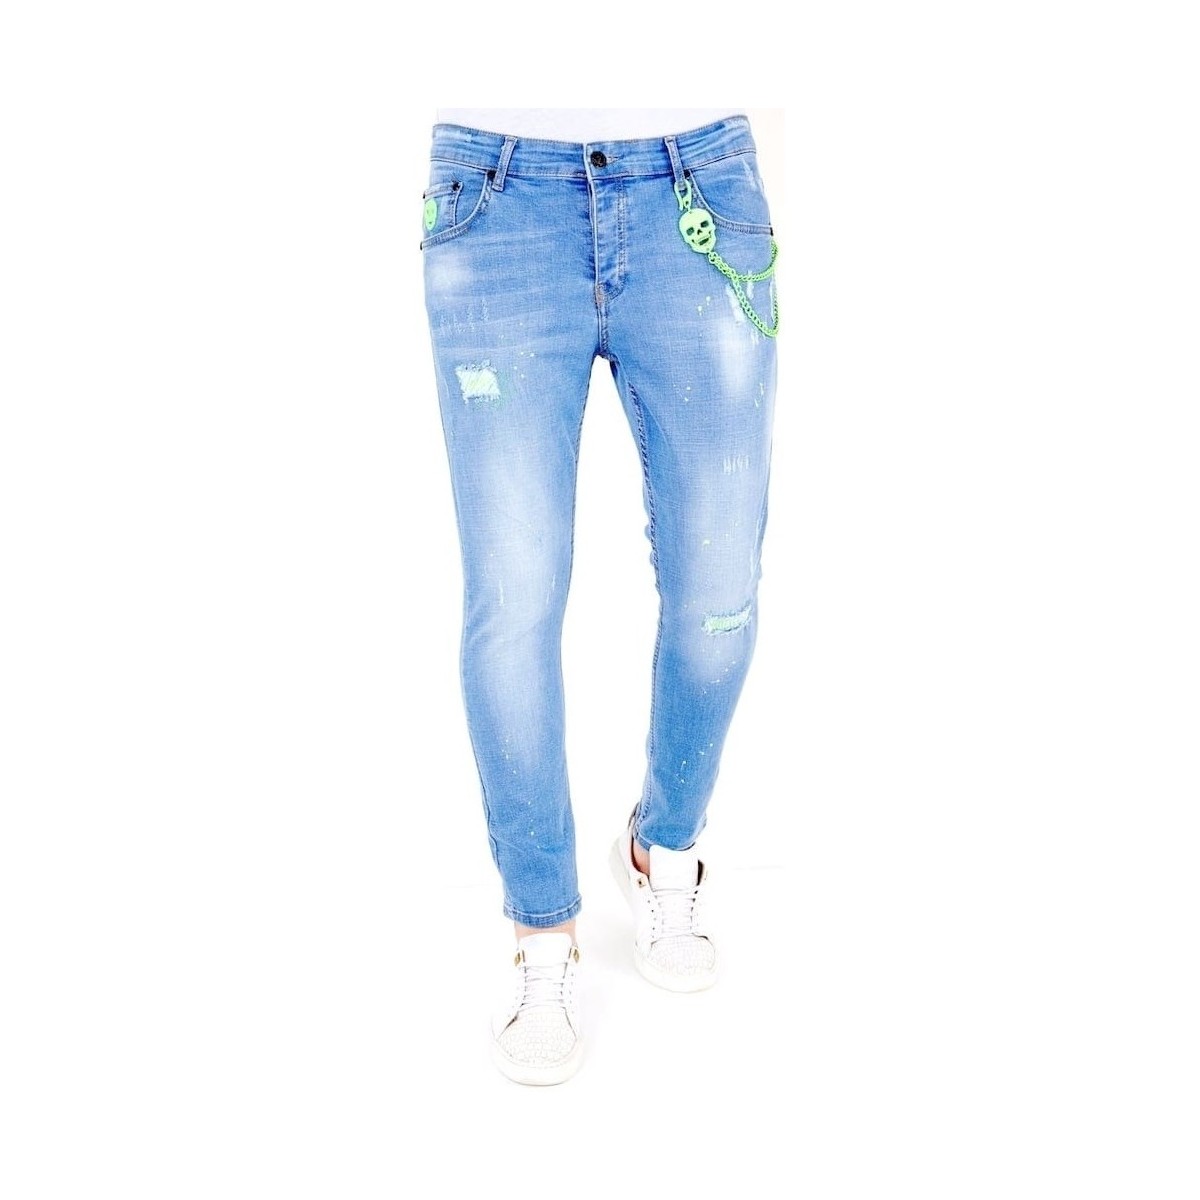 Textiel Heren Skinny jeans Lf Lichte Jeans Verfspatten Blauw